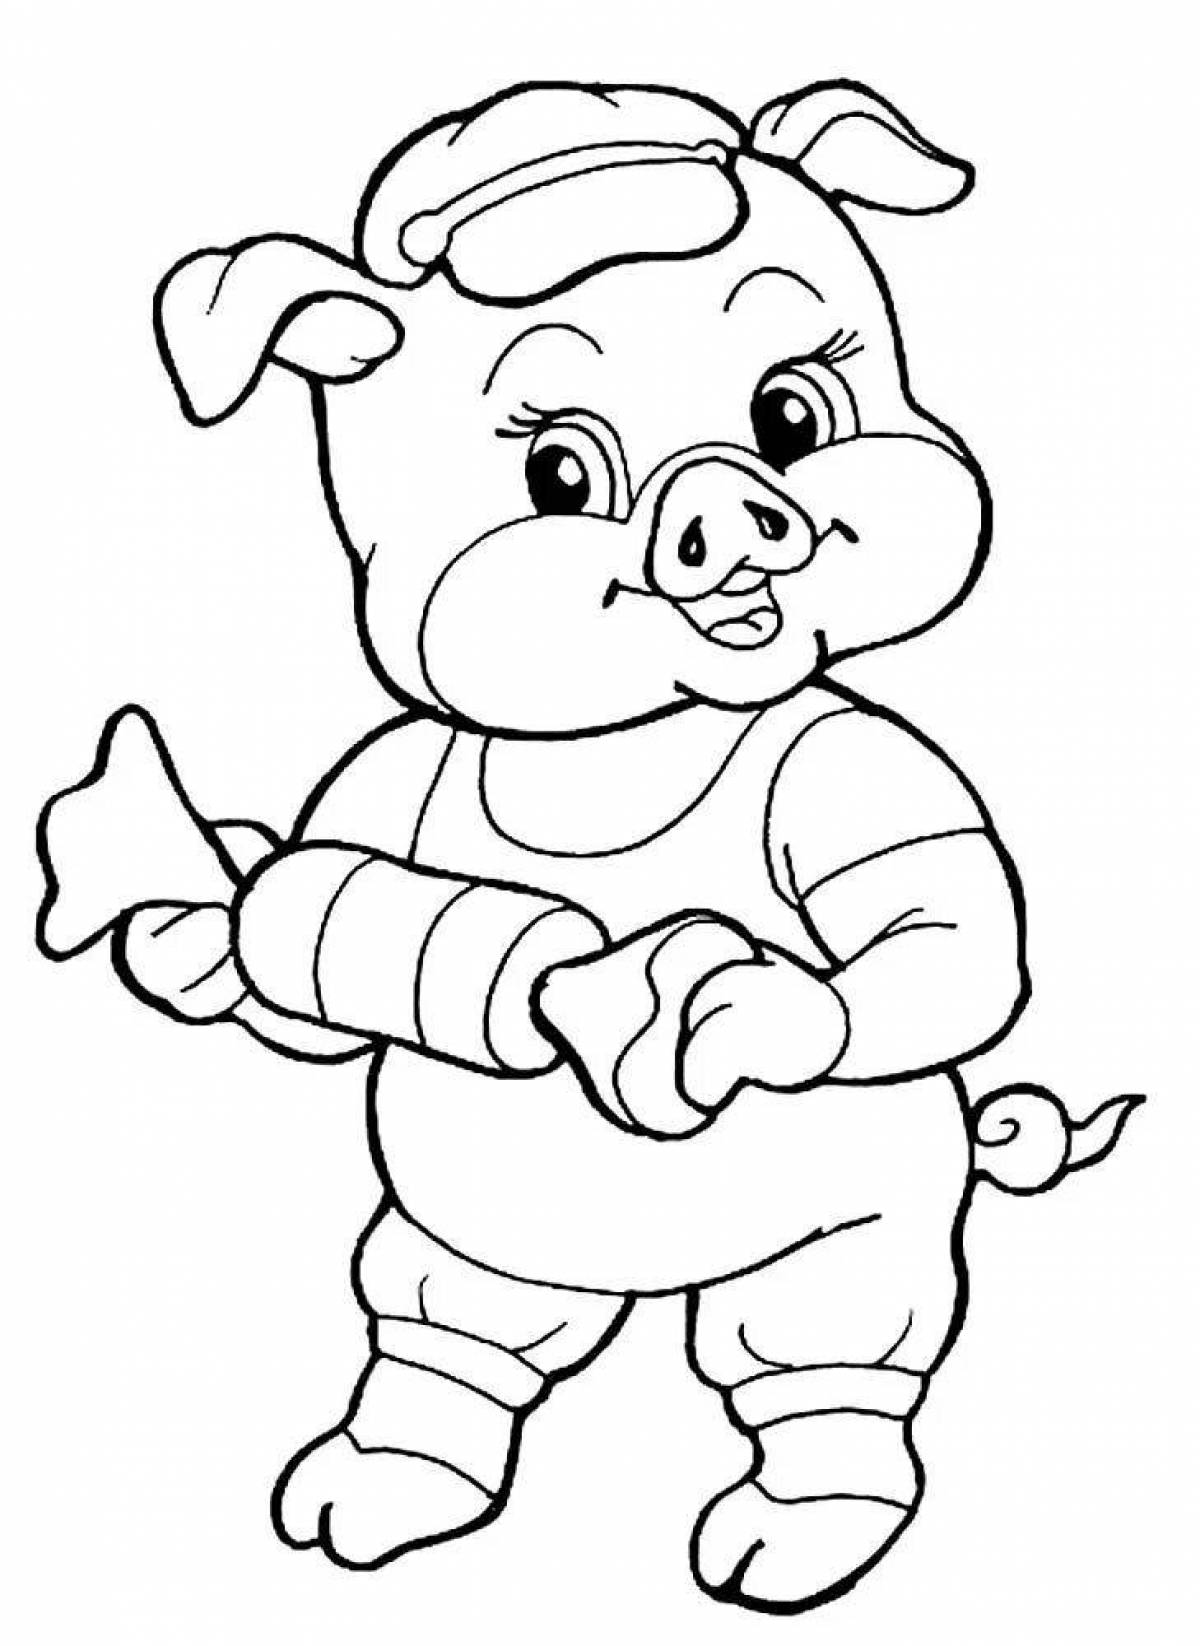 Giggly раскраска свинья для детей